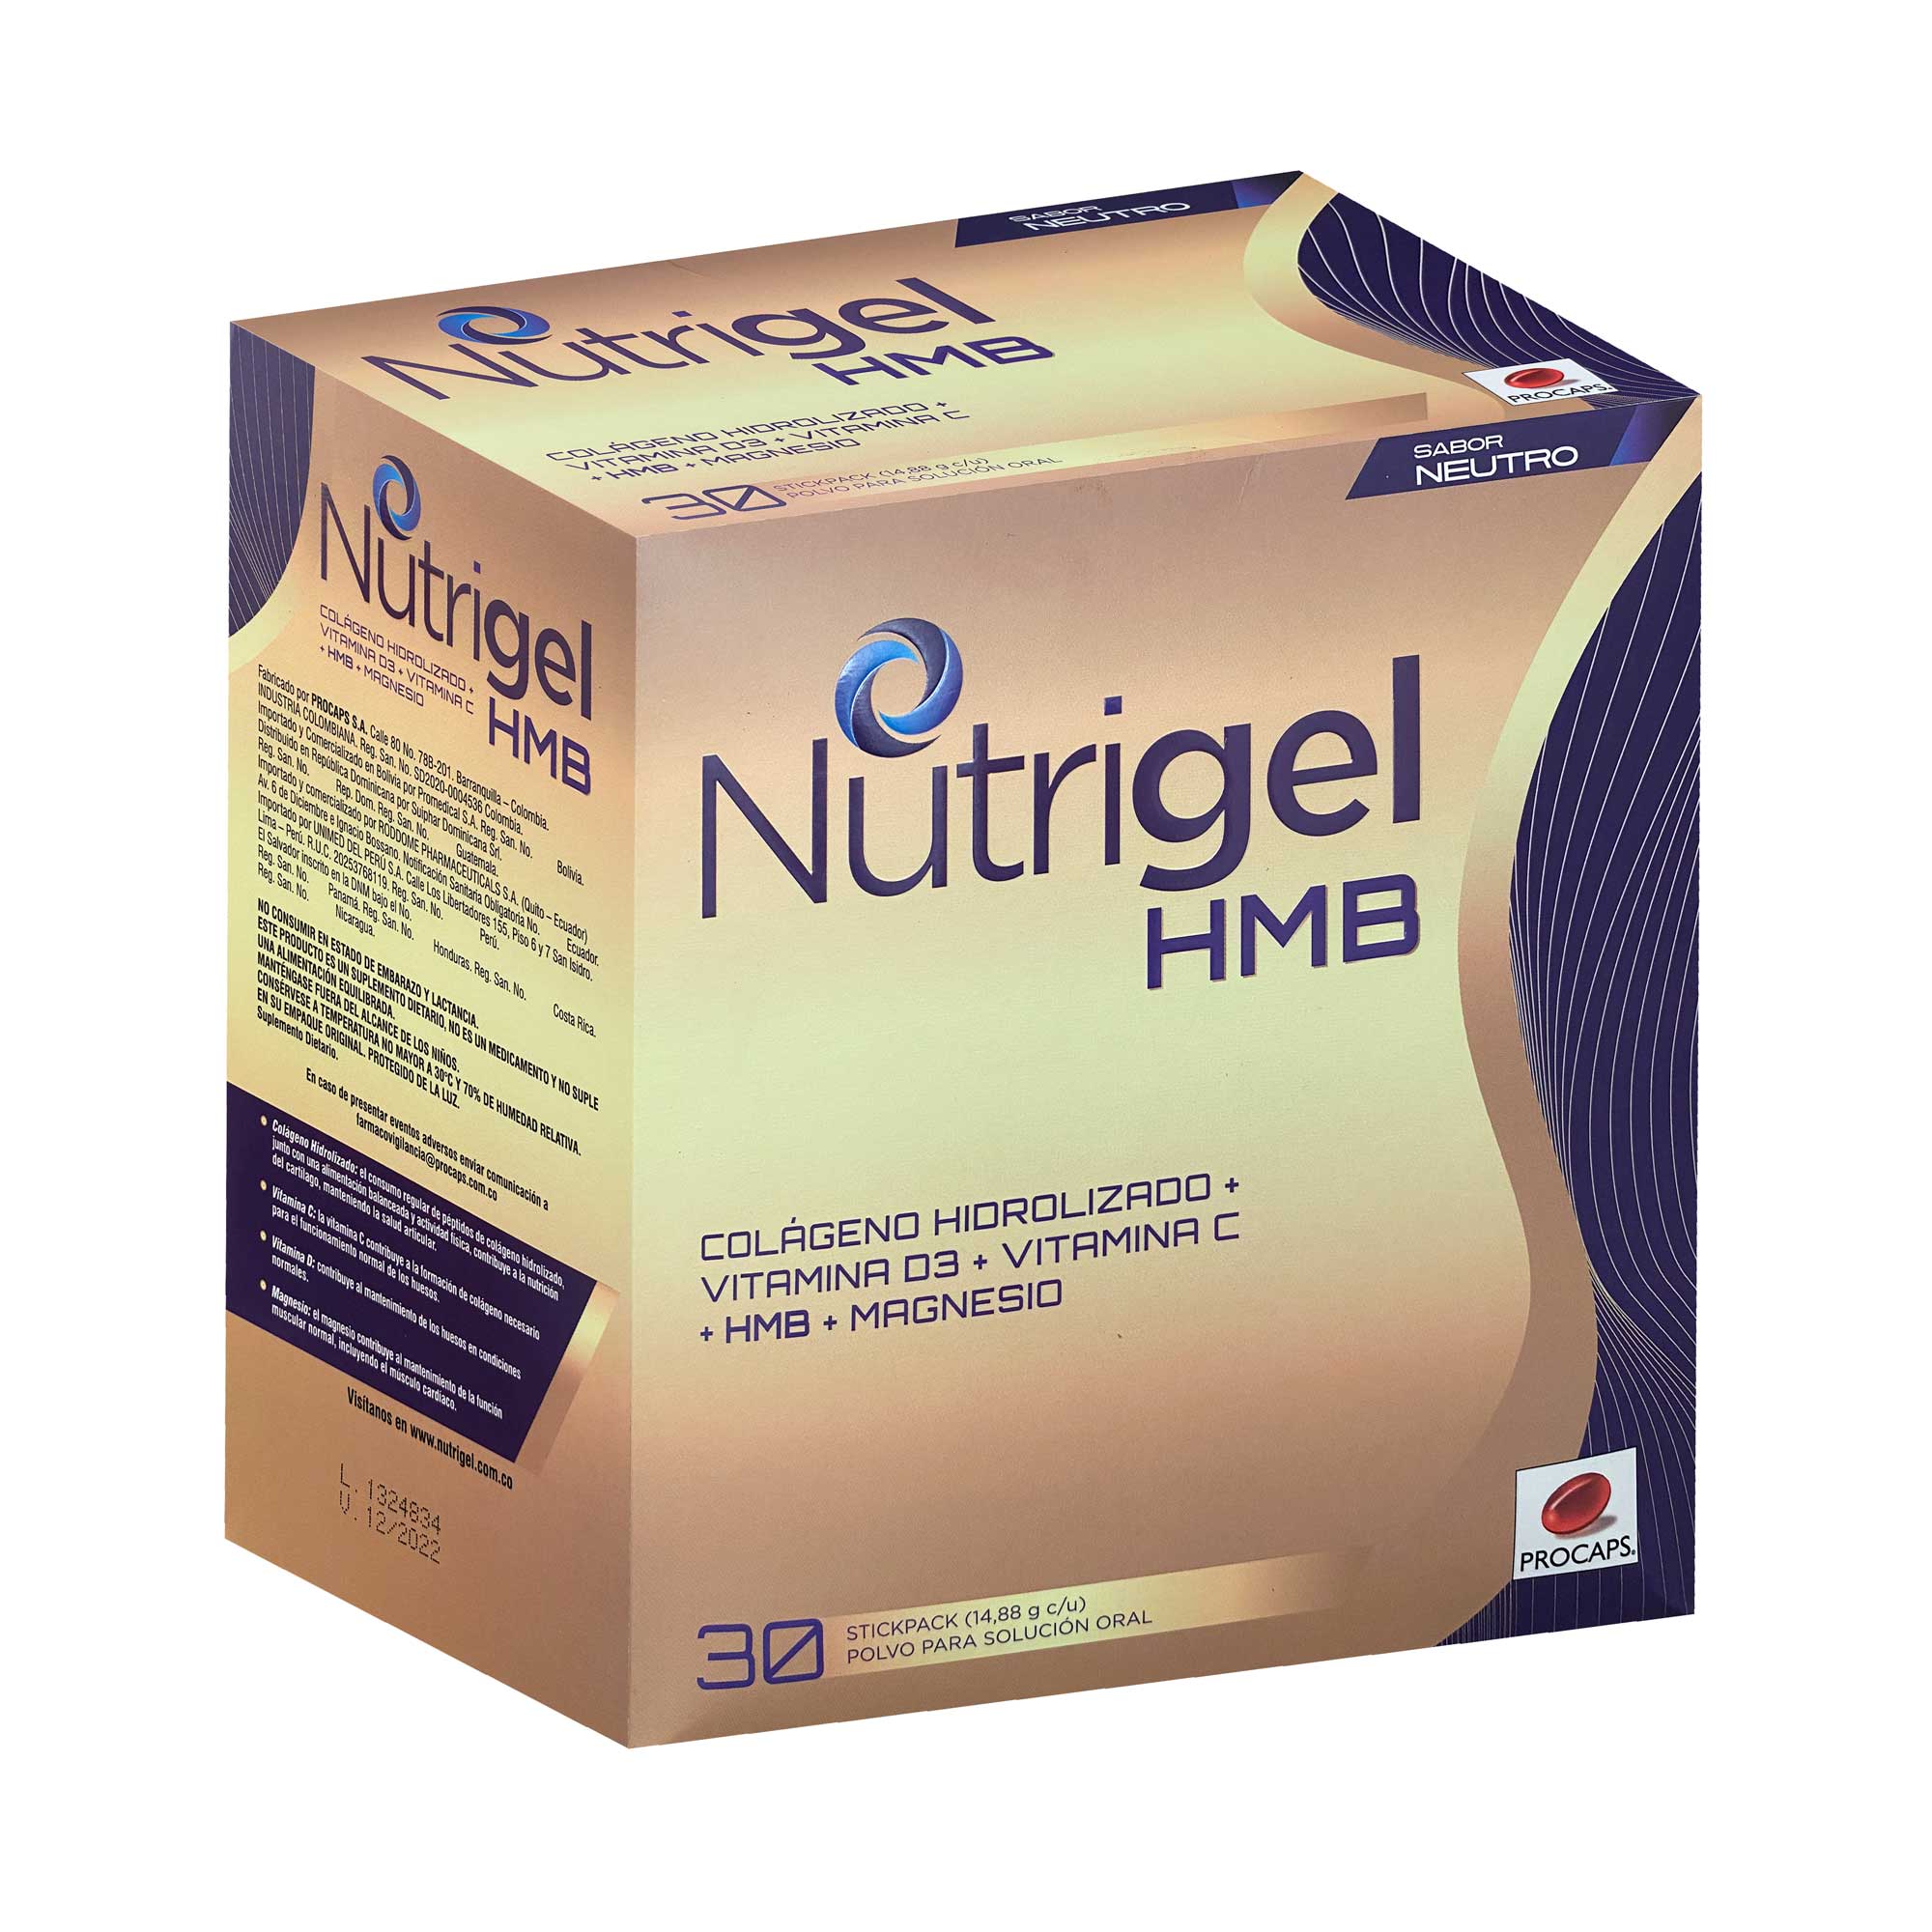 Nutrigel ® Power, Nutrigel HMB